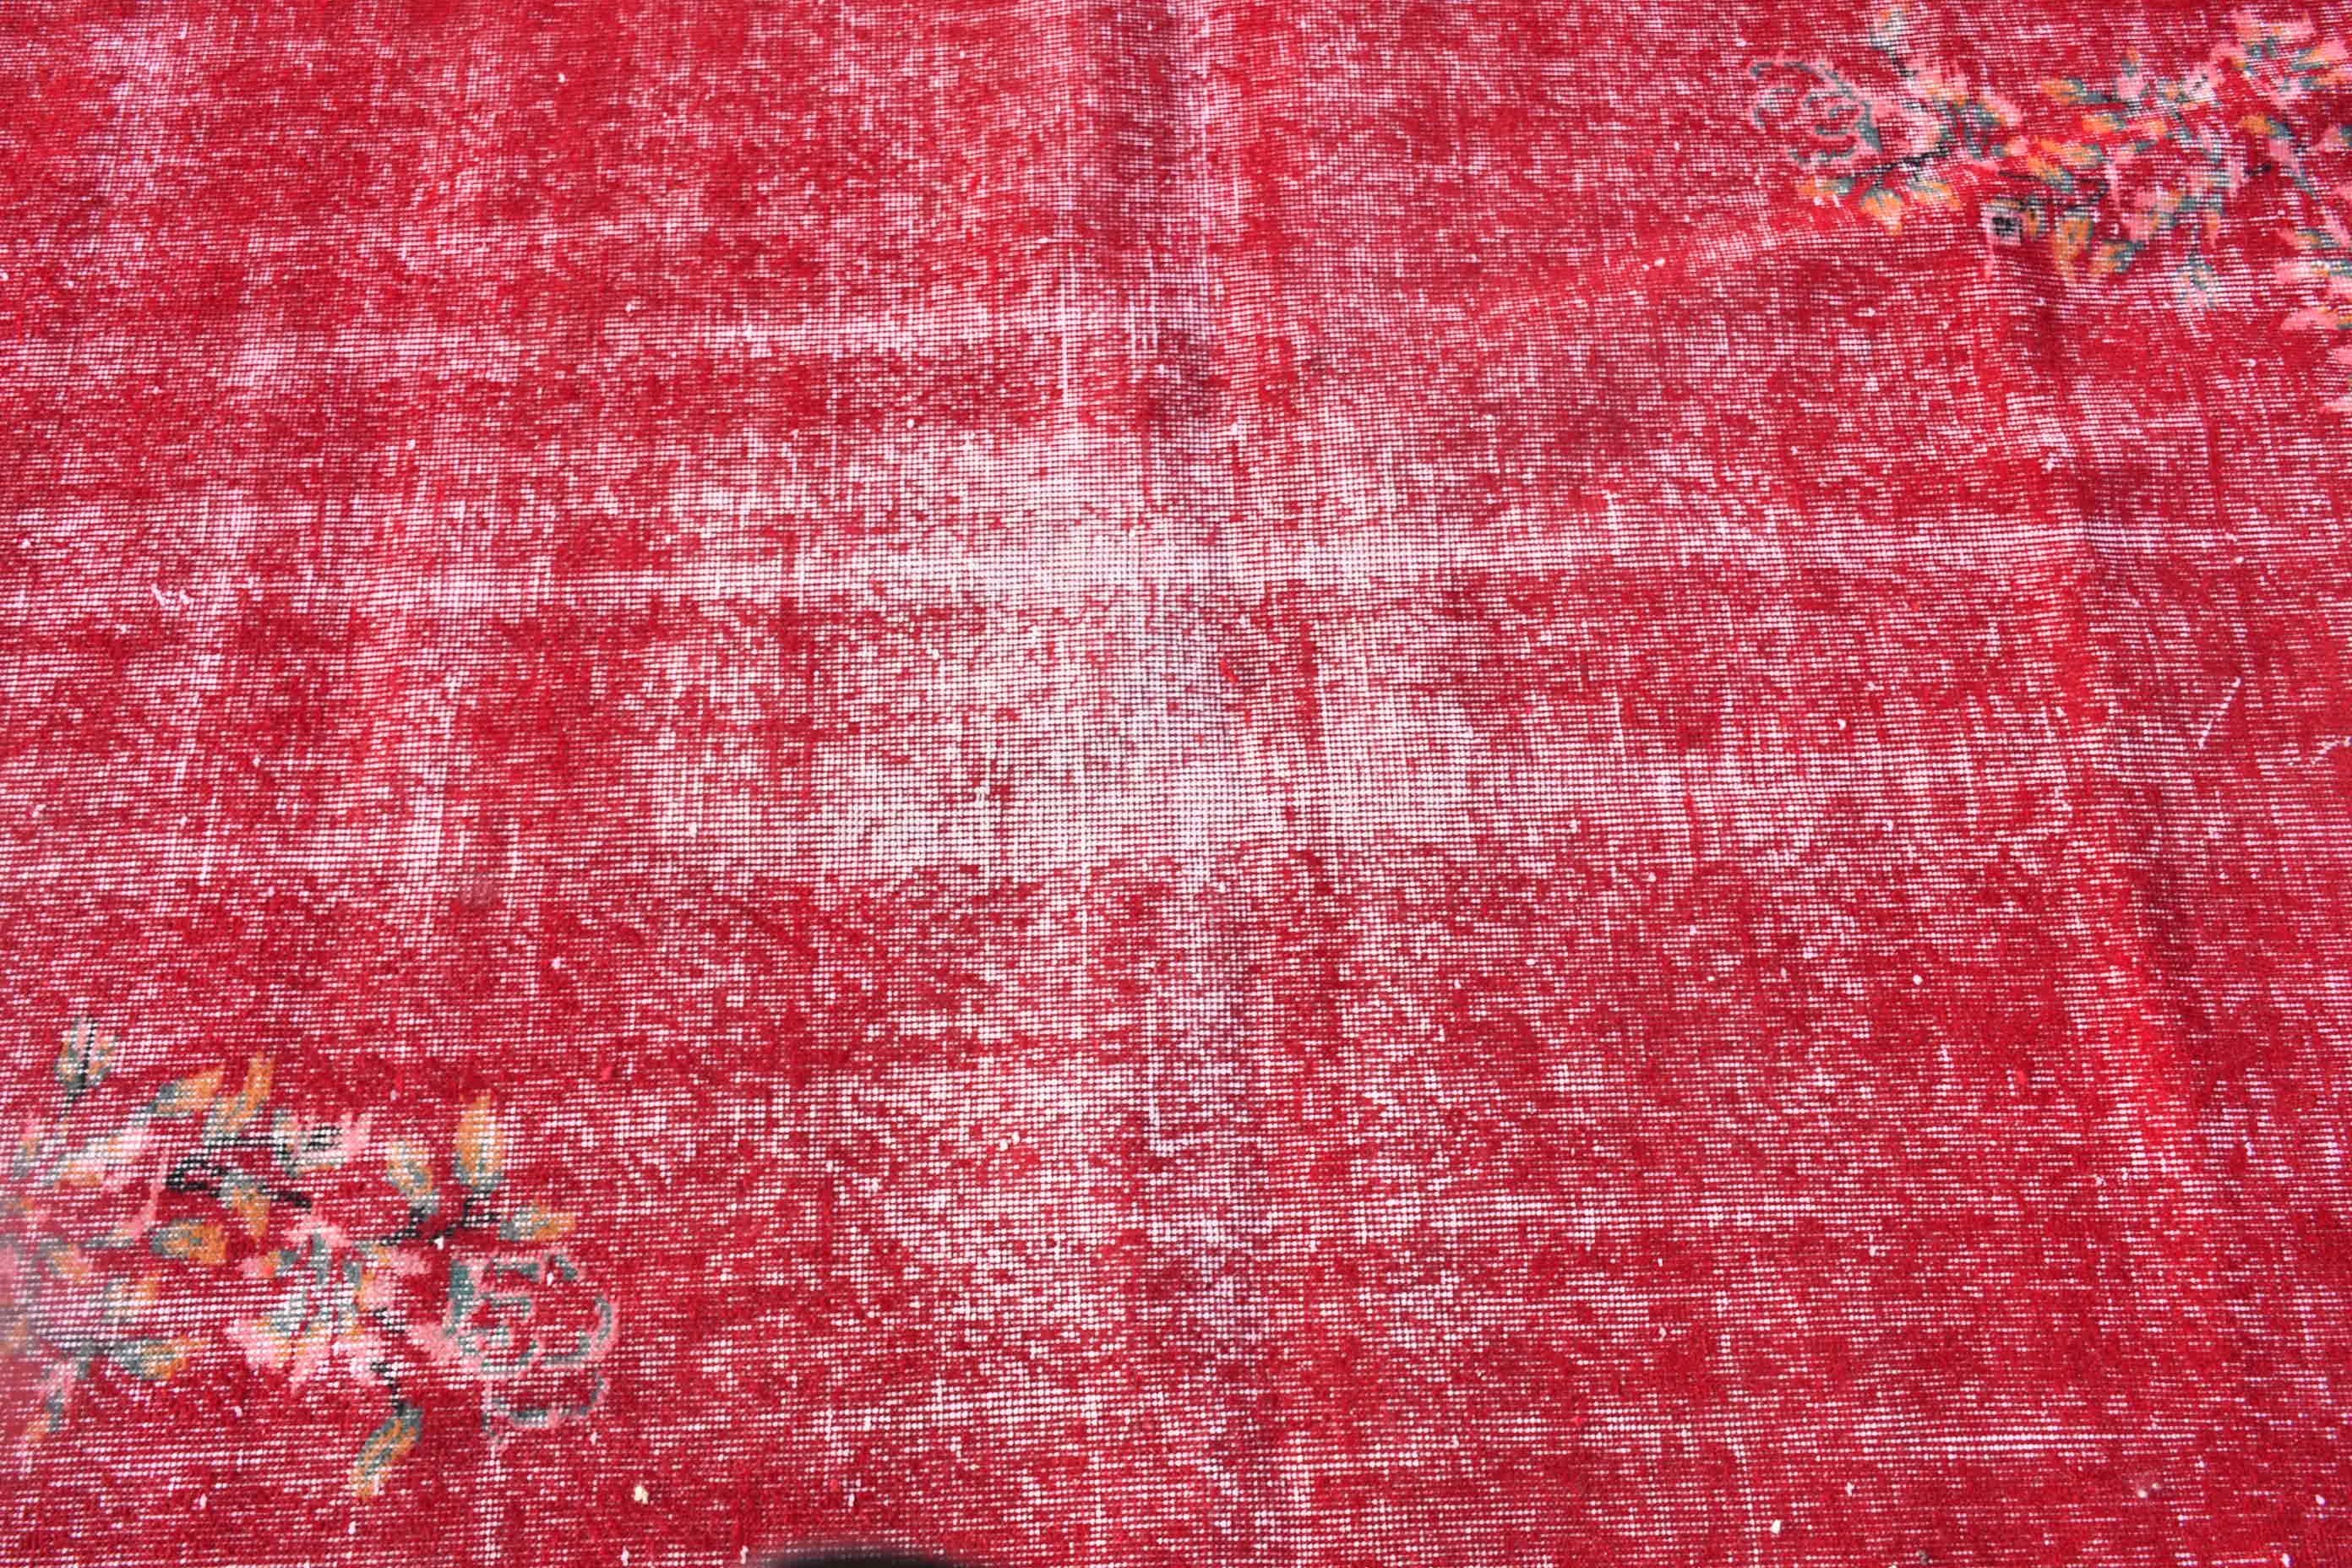 Red Bedroom Rugs, Wool Rug, Turkish Rug, Rugs for Nursery, 3.7x6.7 ft Area Rugs, Vintage Rug, Dorm Rug, Bedroom Rug, Dining Room Rug